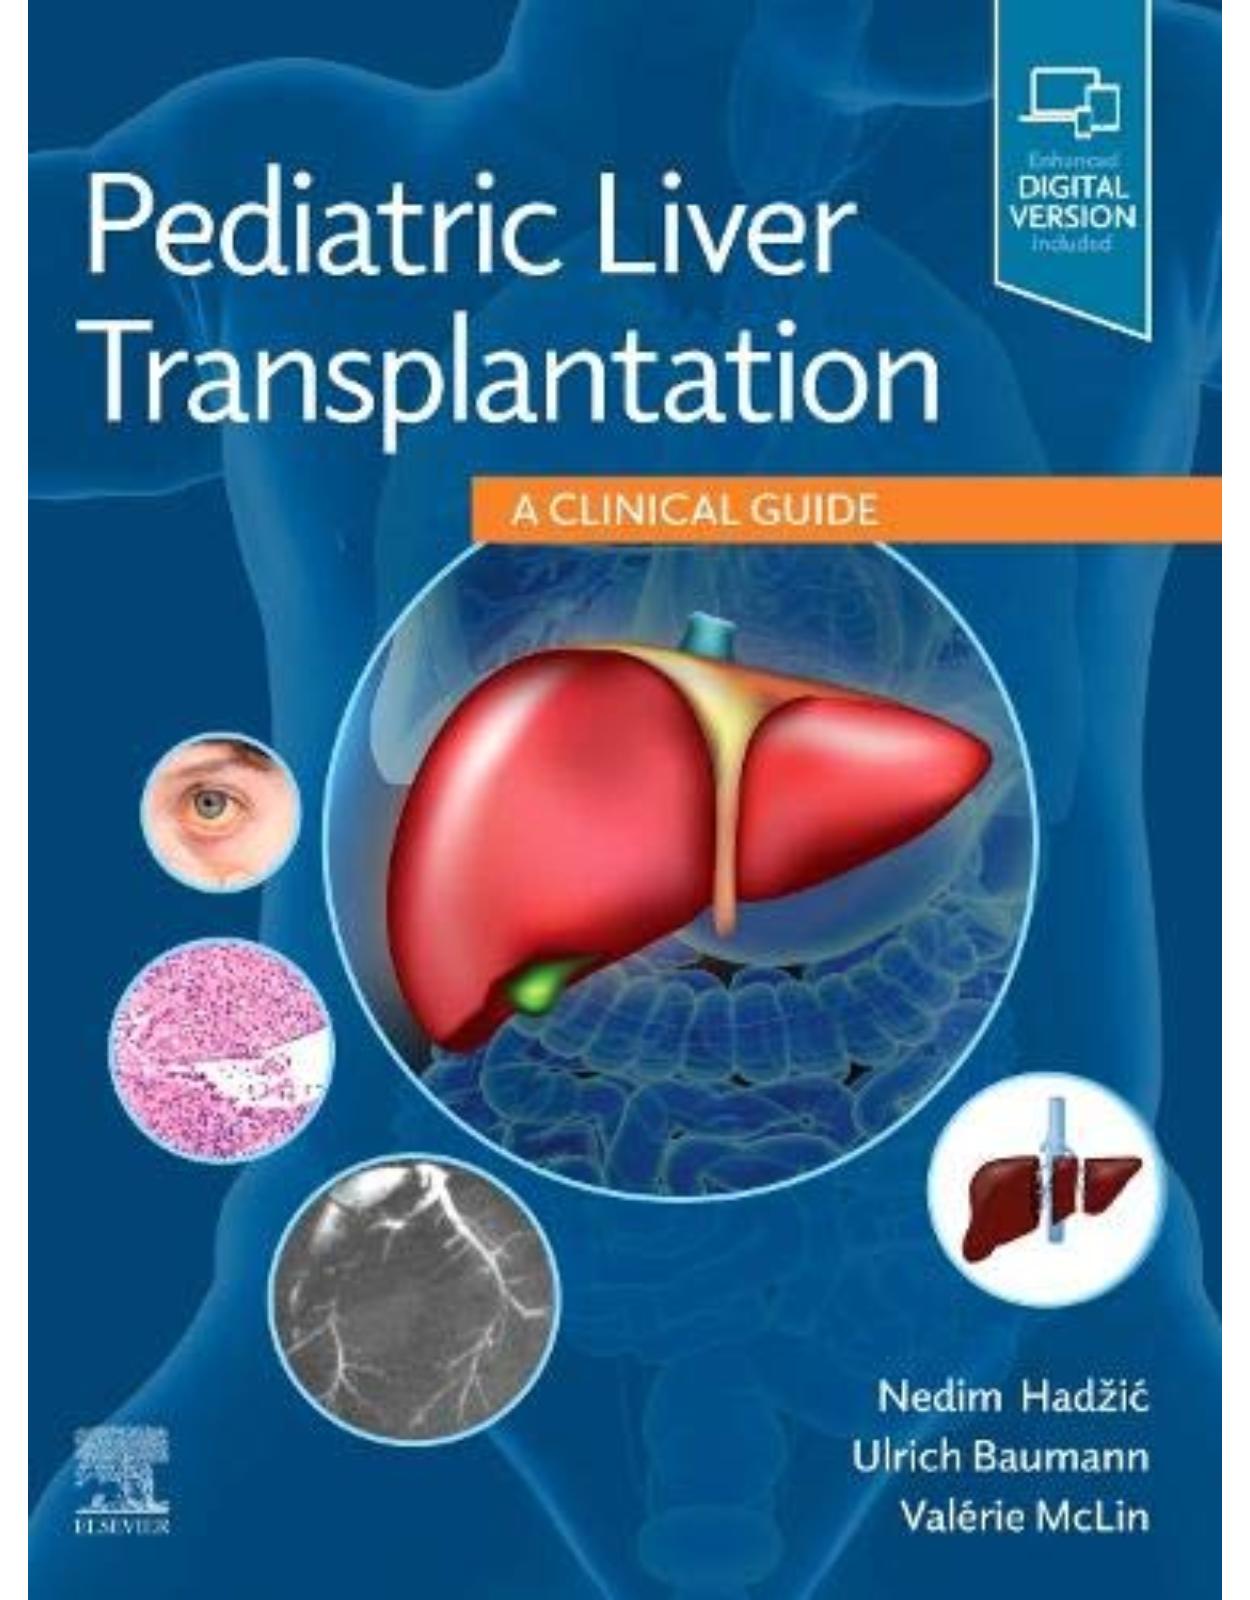 Pediatric Liver Transplantation: A Clinical Guide